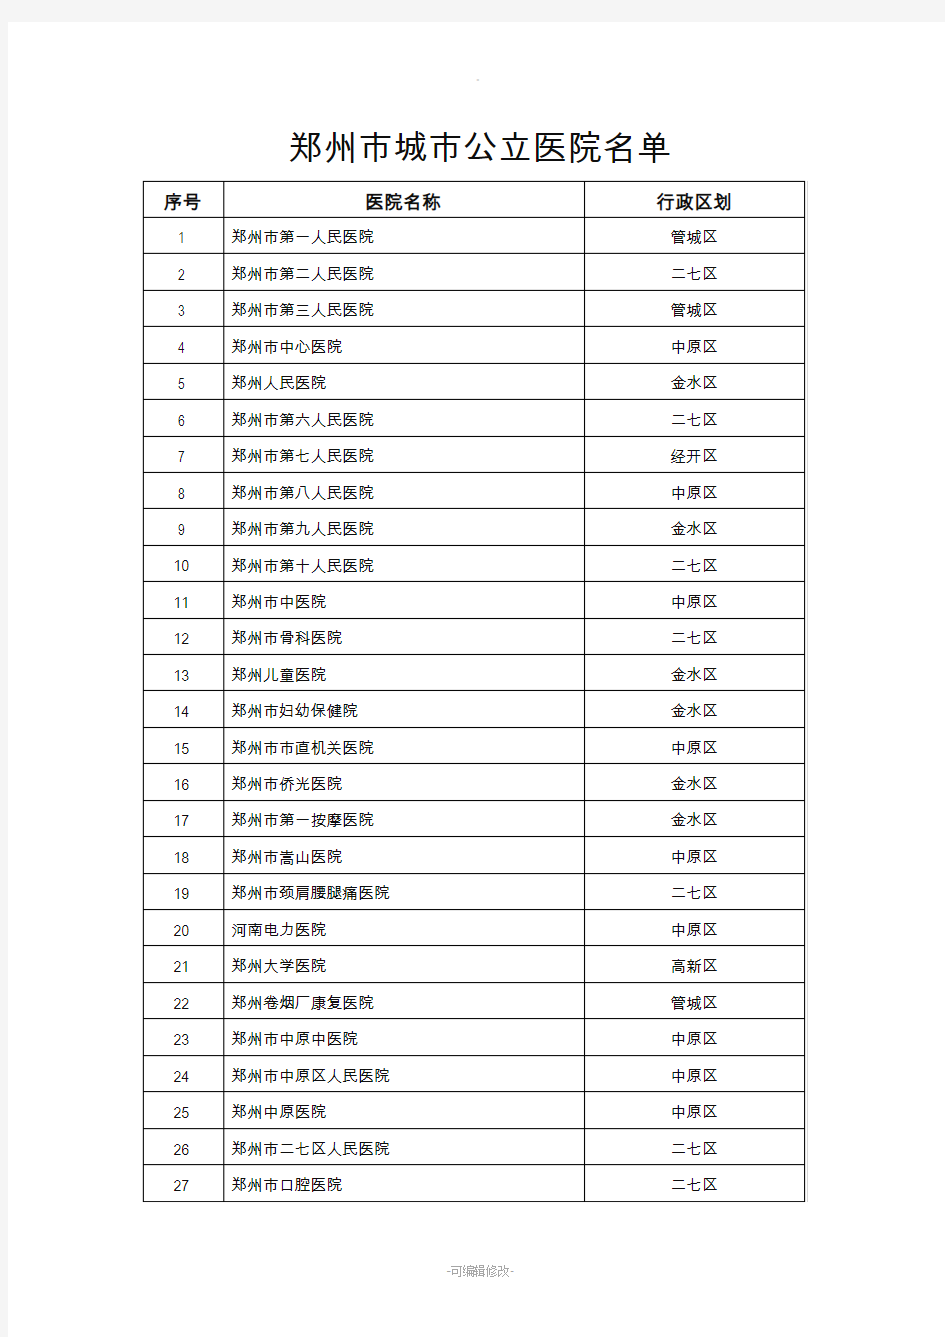 郑州市城市公立医院名单